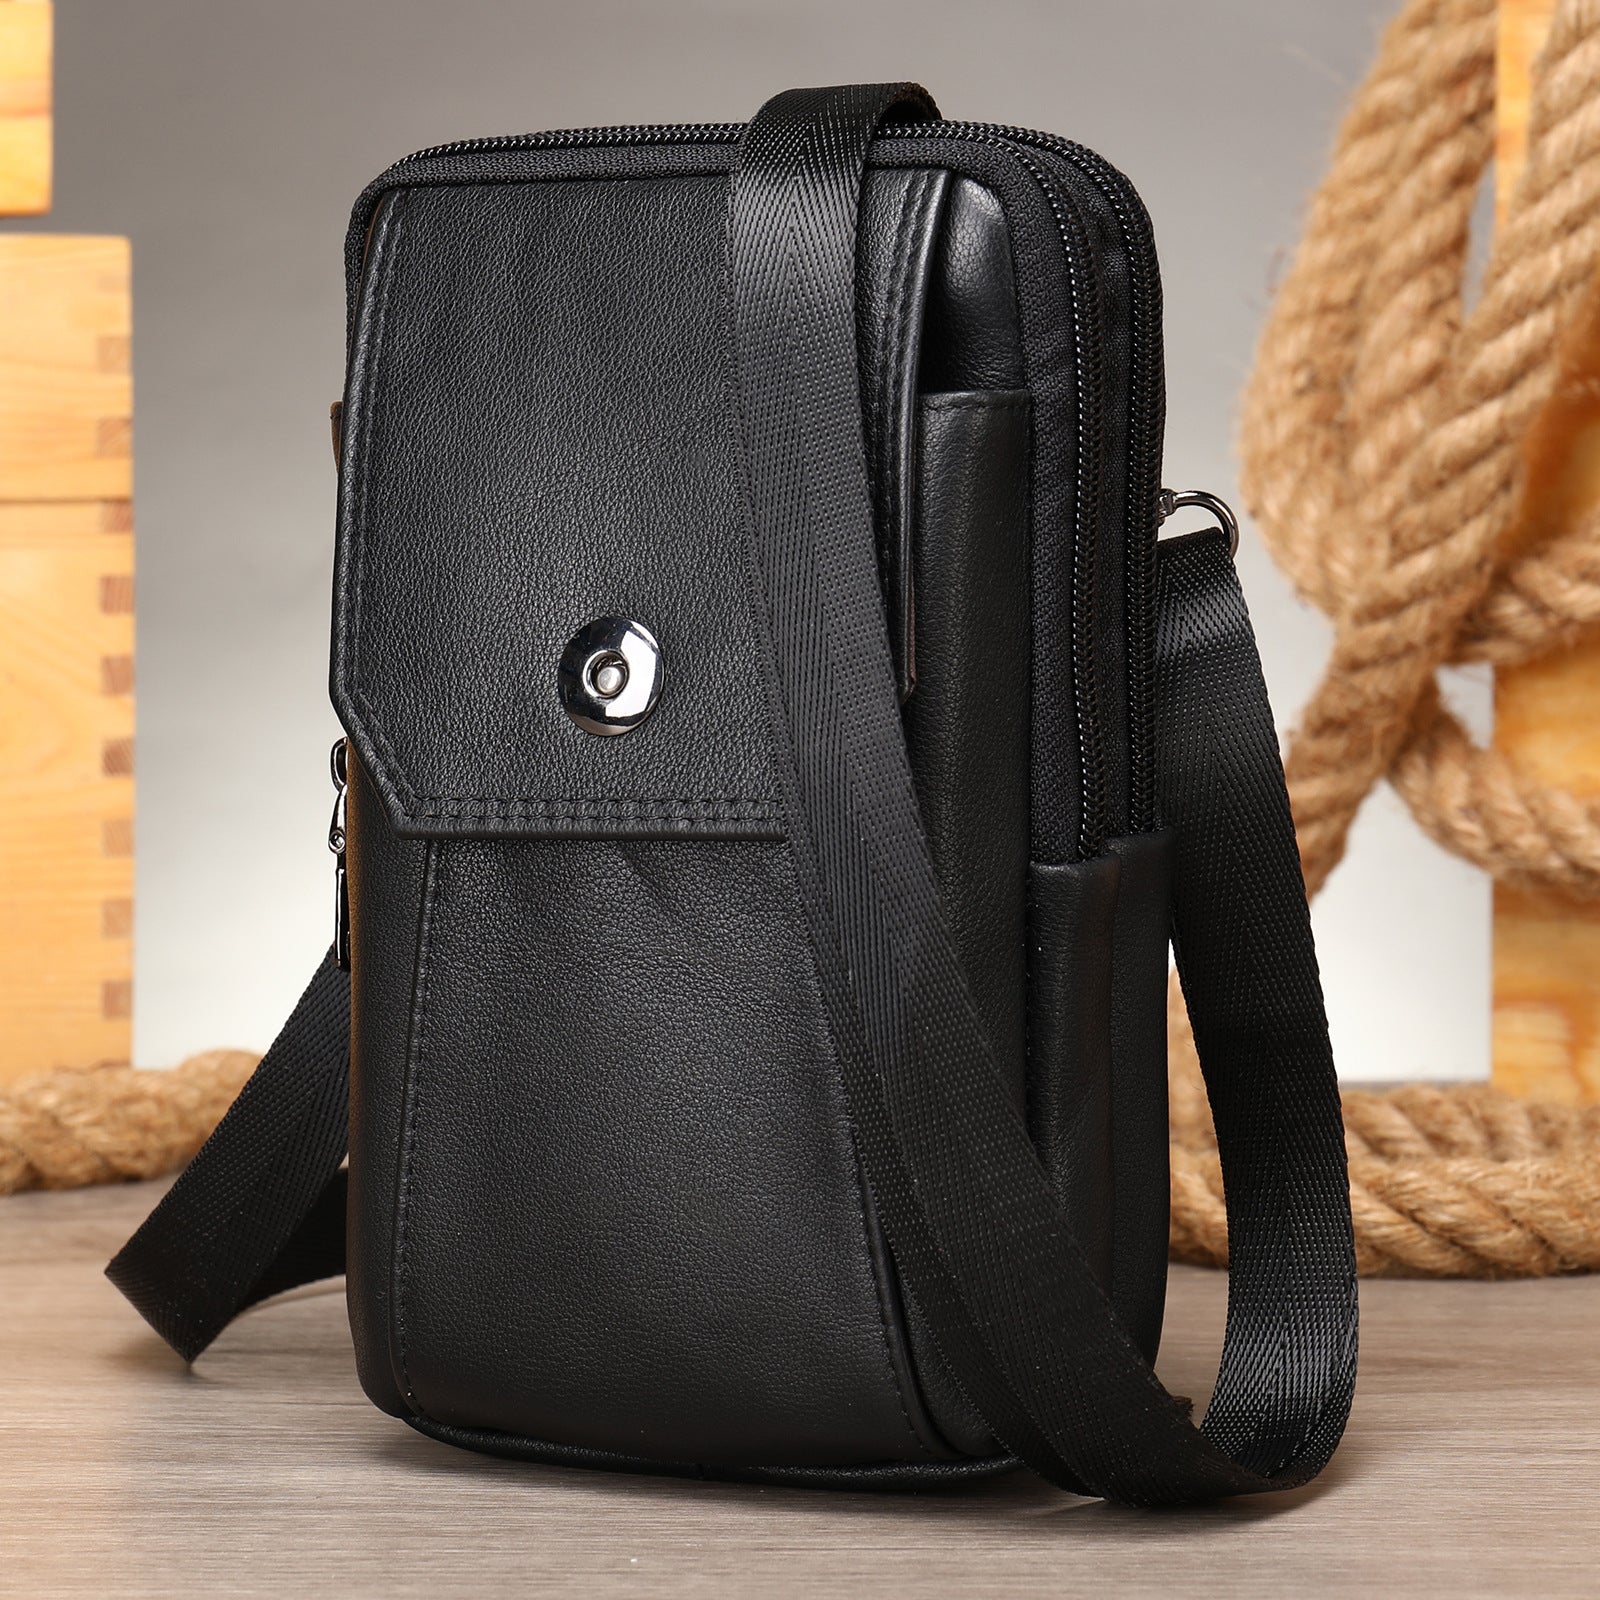 Men's Leather Casual One-shoulder Messenger Bag